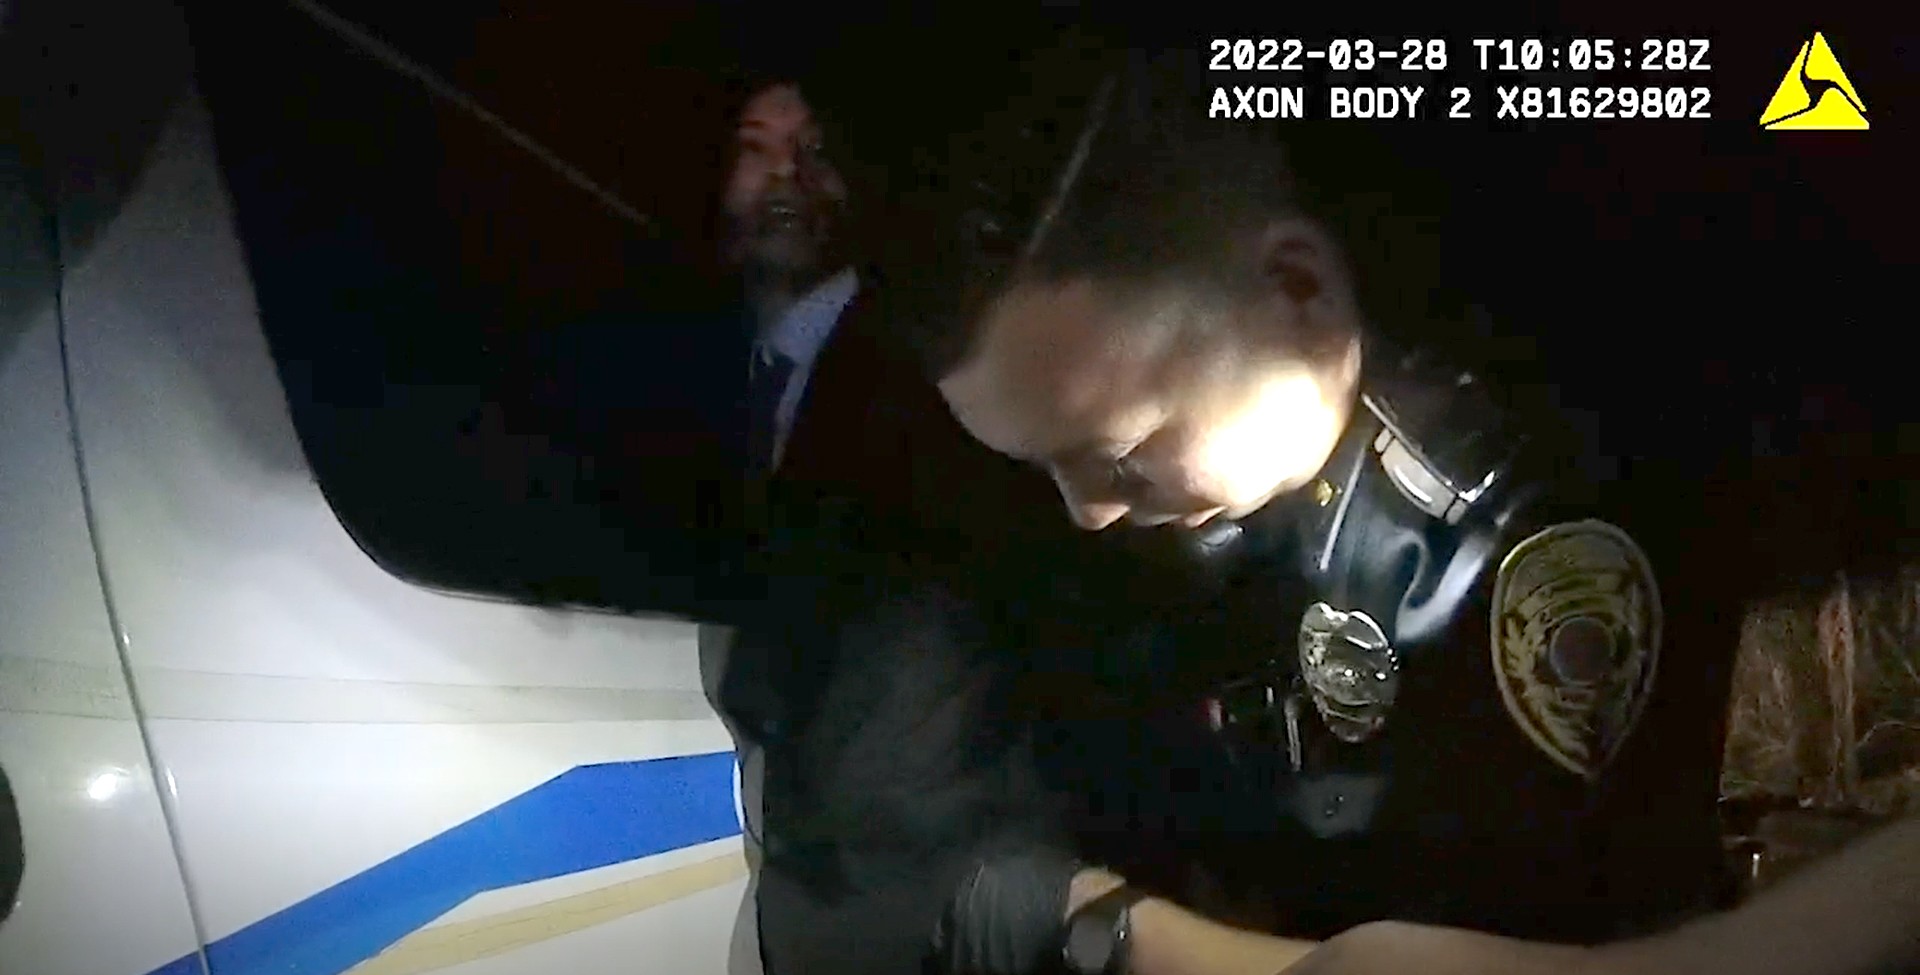 Câmera presa no uniforme de policial mostra o momento da prisão de Ezra Miller no Havaí em março de 2022 (Foto: reprodução)